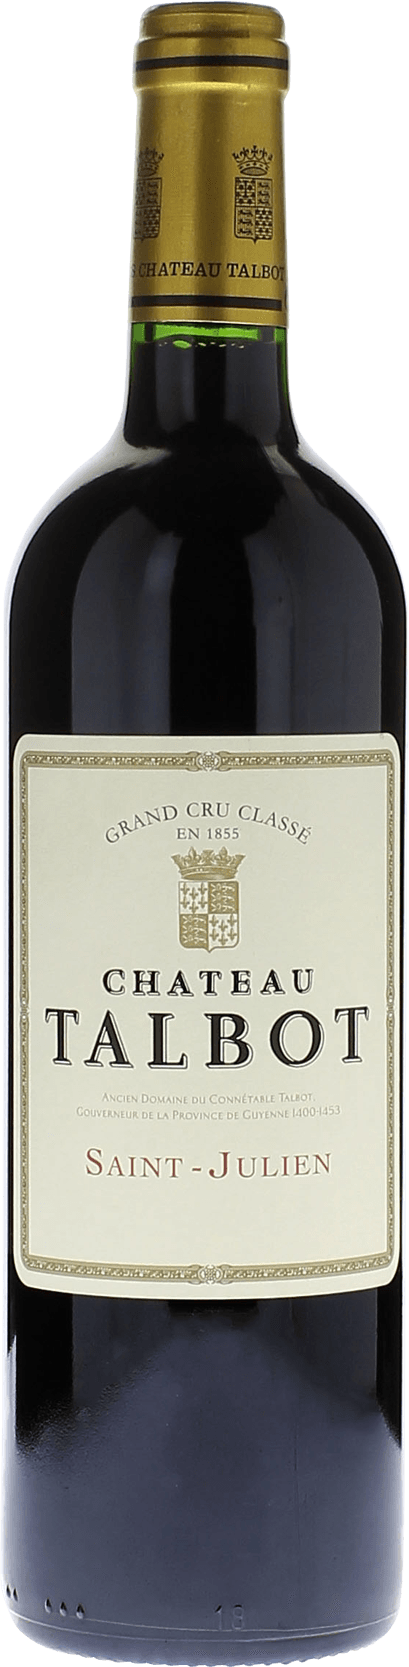 Talbot 1974 4me Grand cru class Saint-Julien, Bordeaux rouge